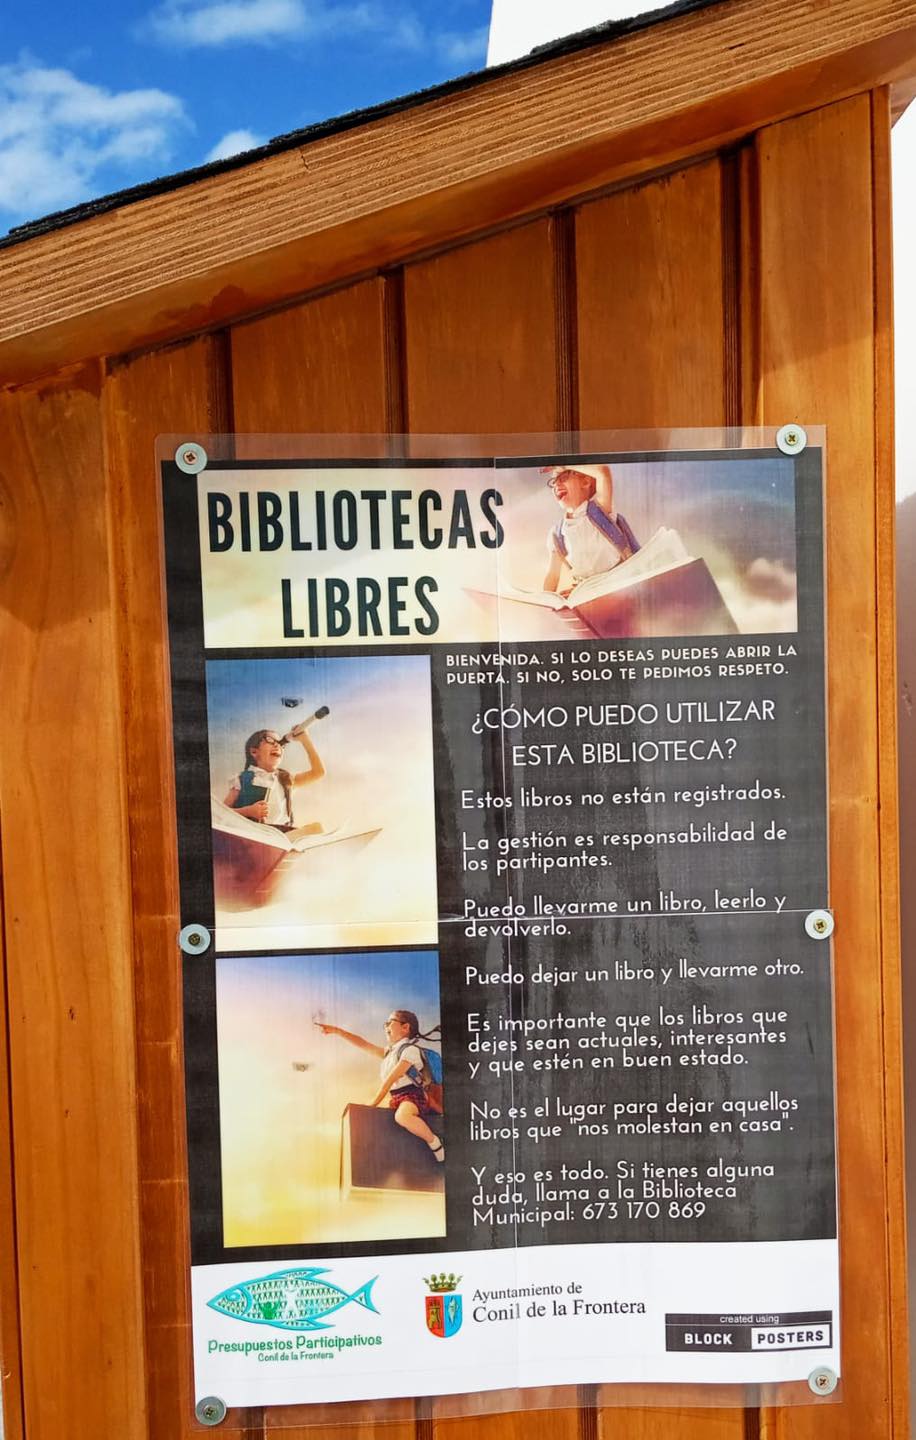 Las normas de las bibliotecas libres